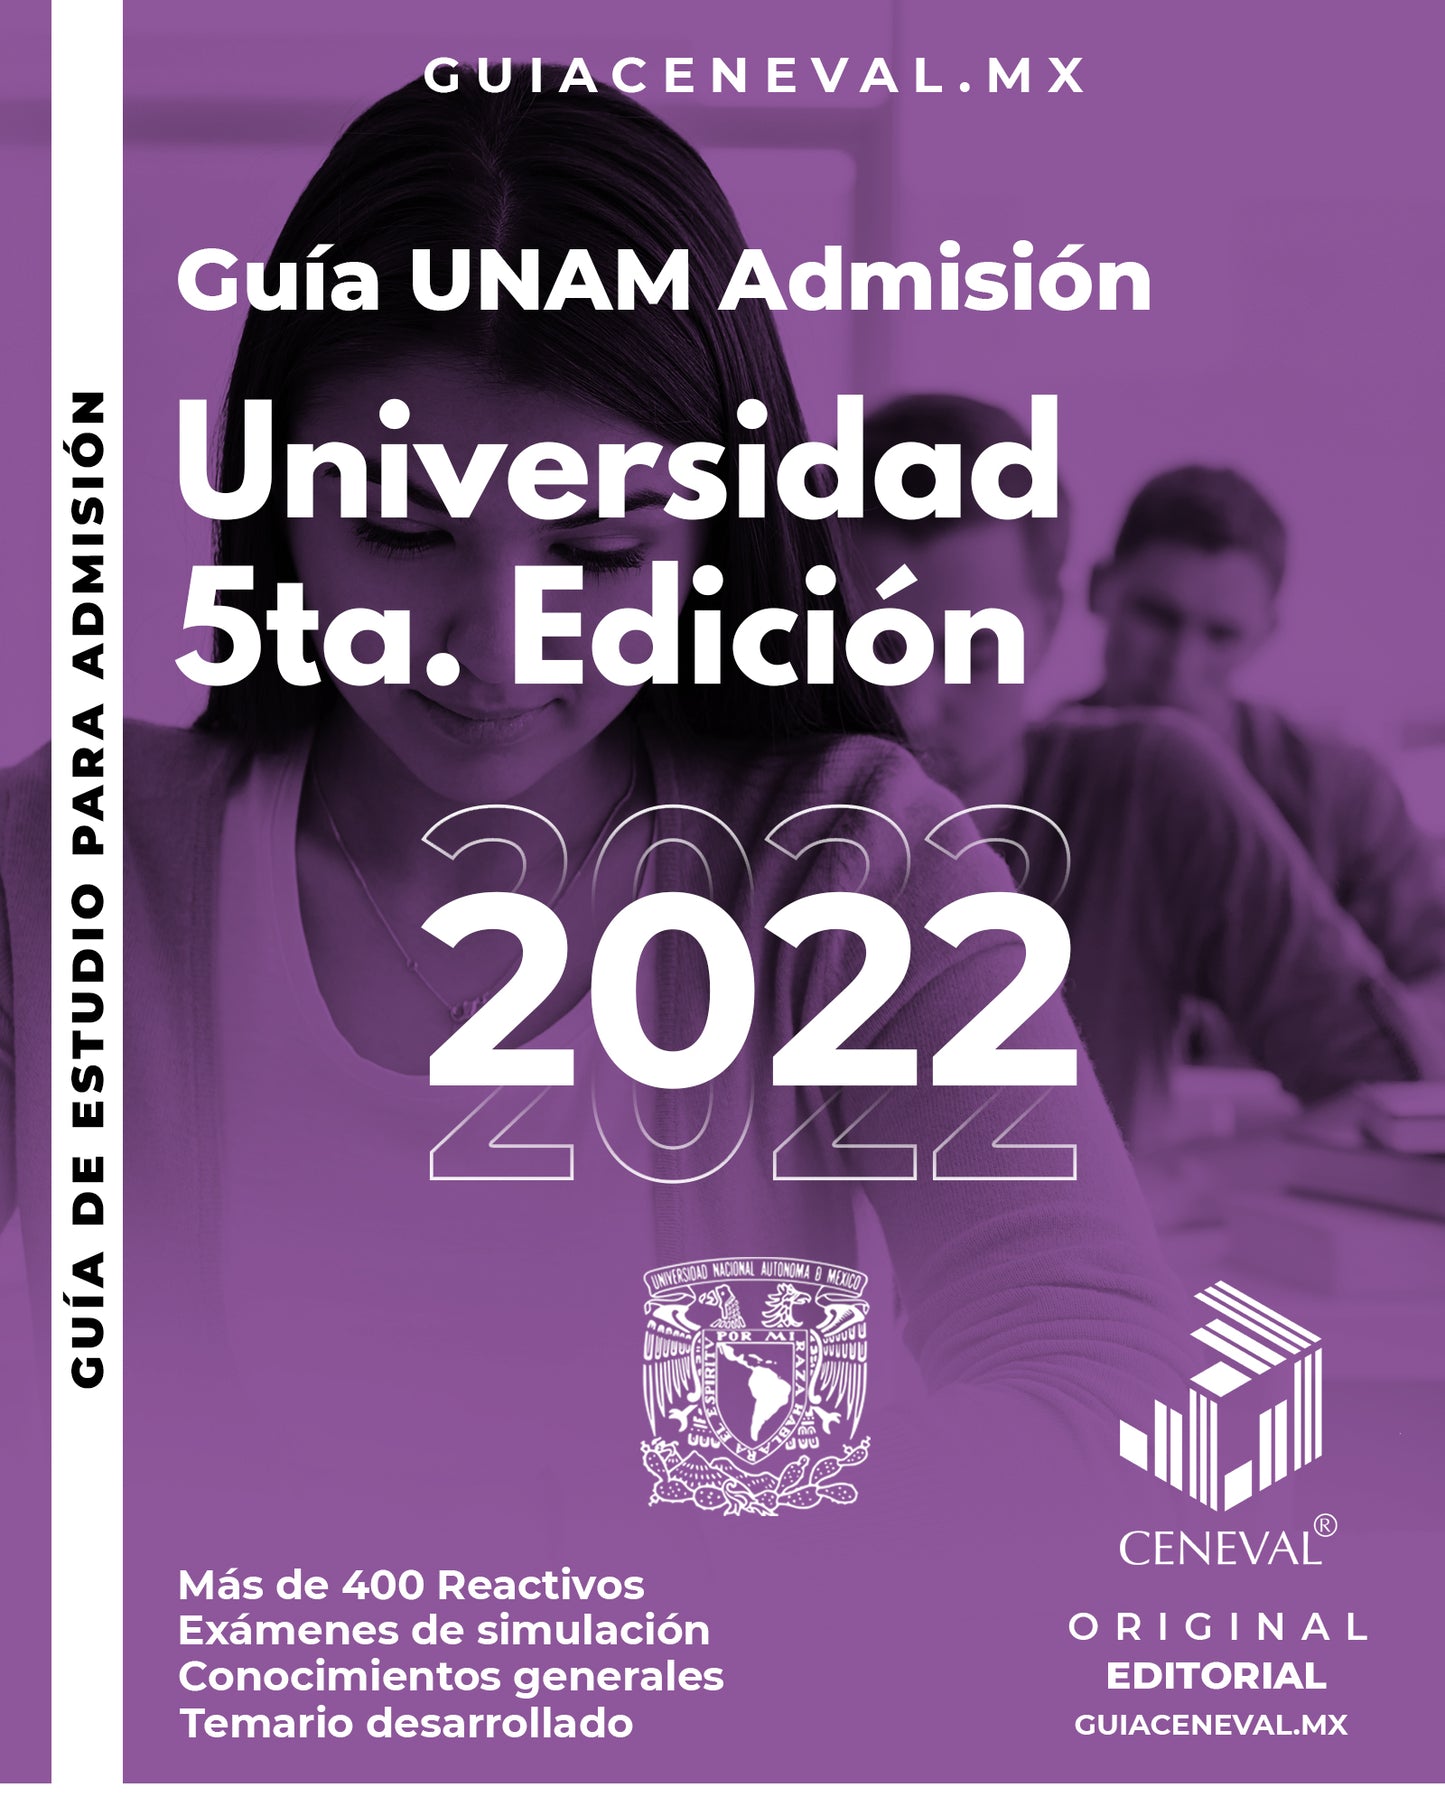 Guía UNAM Admisión - Universidad 5ta. Edición